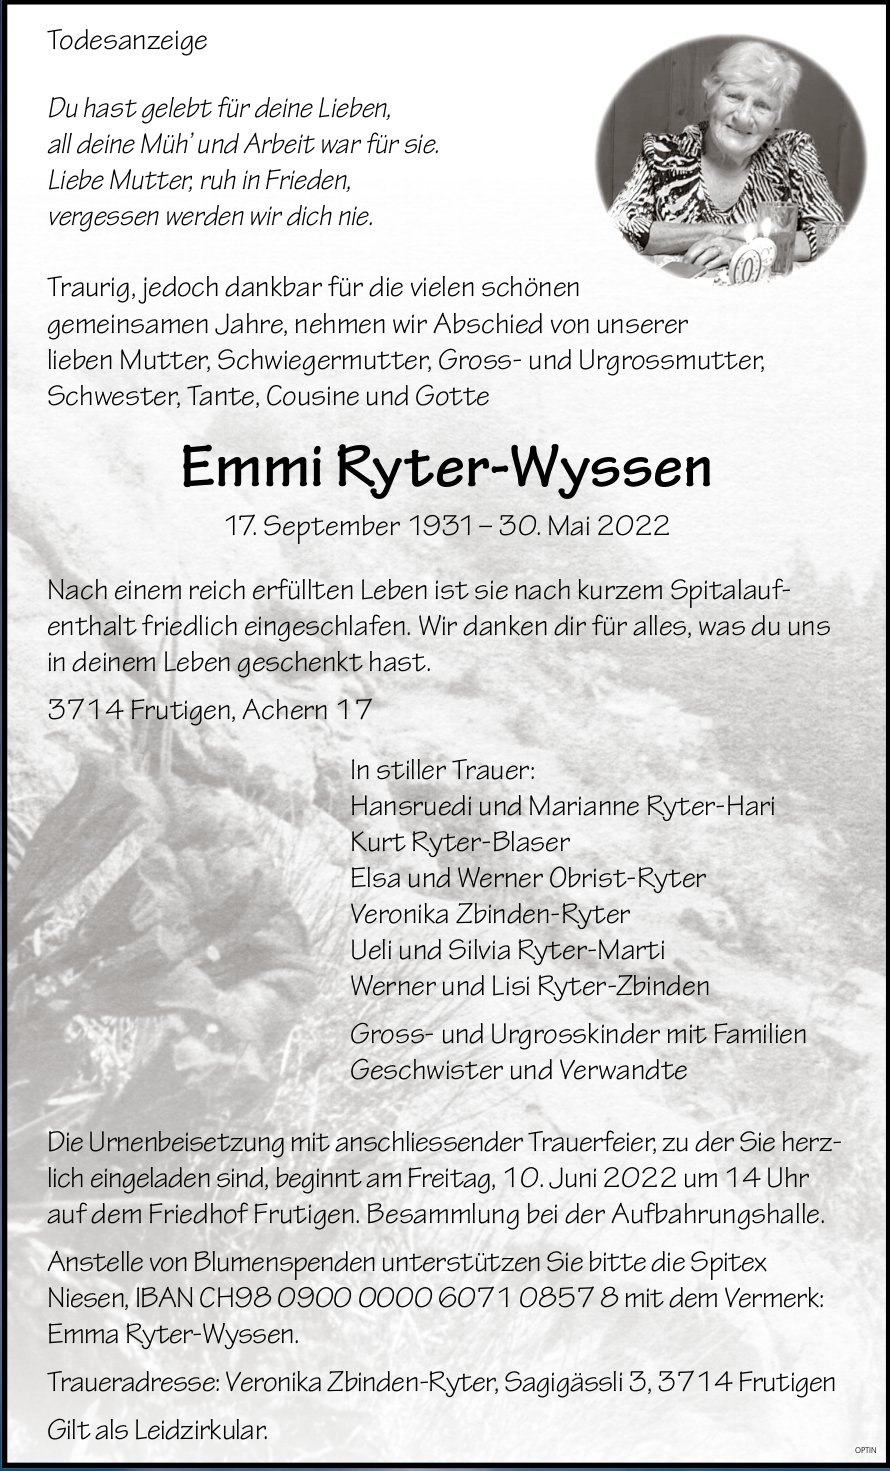 Emmi Ryter-Wyssen, Mai 2022 / TA